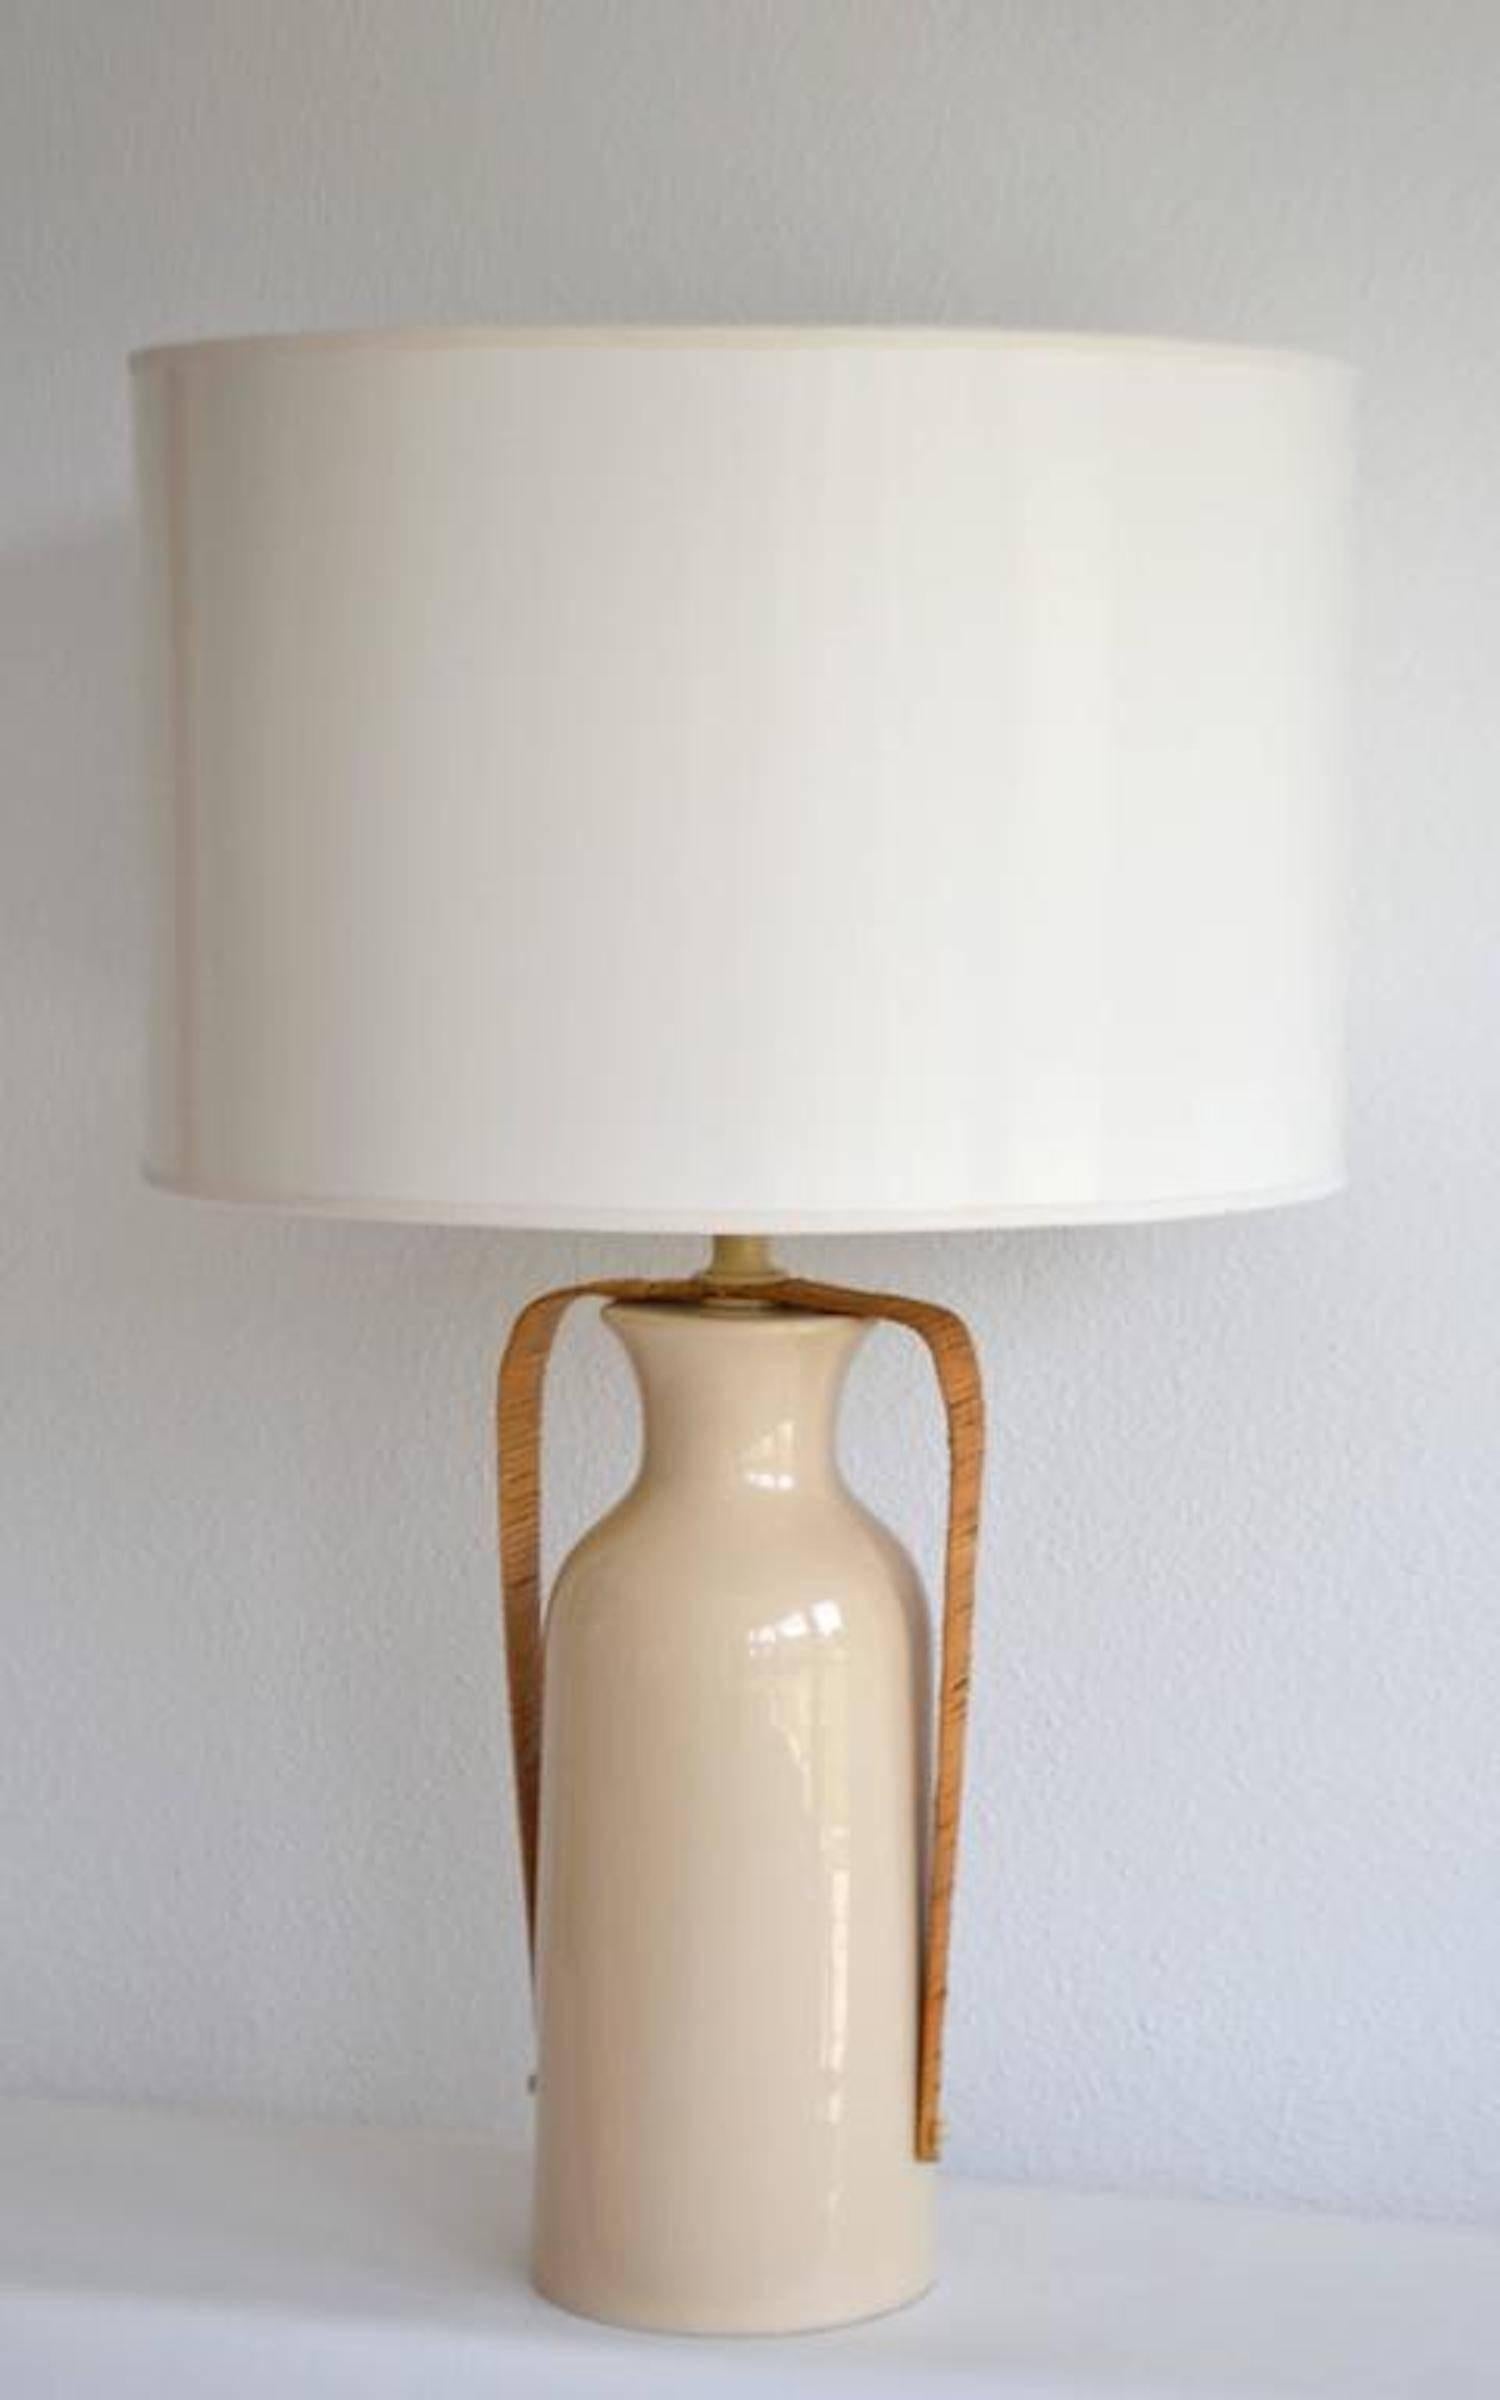 Midcentury Jar Form Table Lamp 1